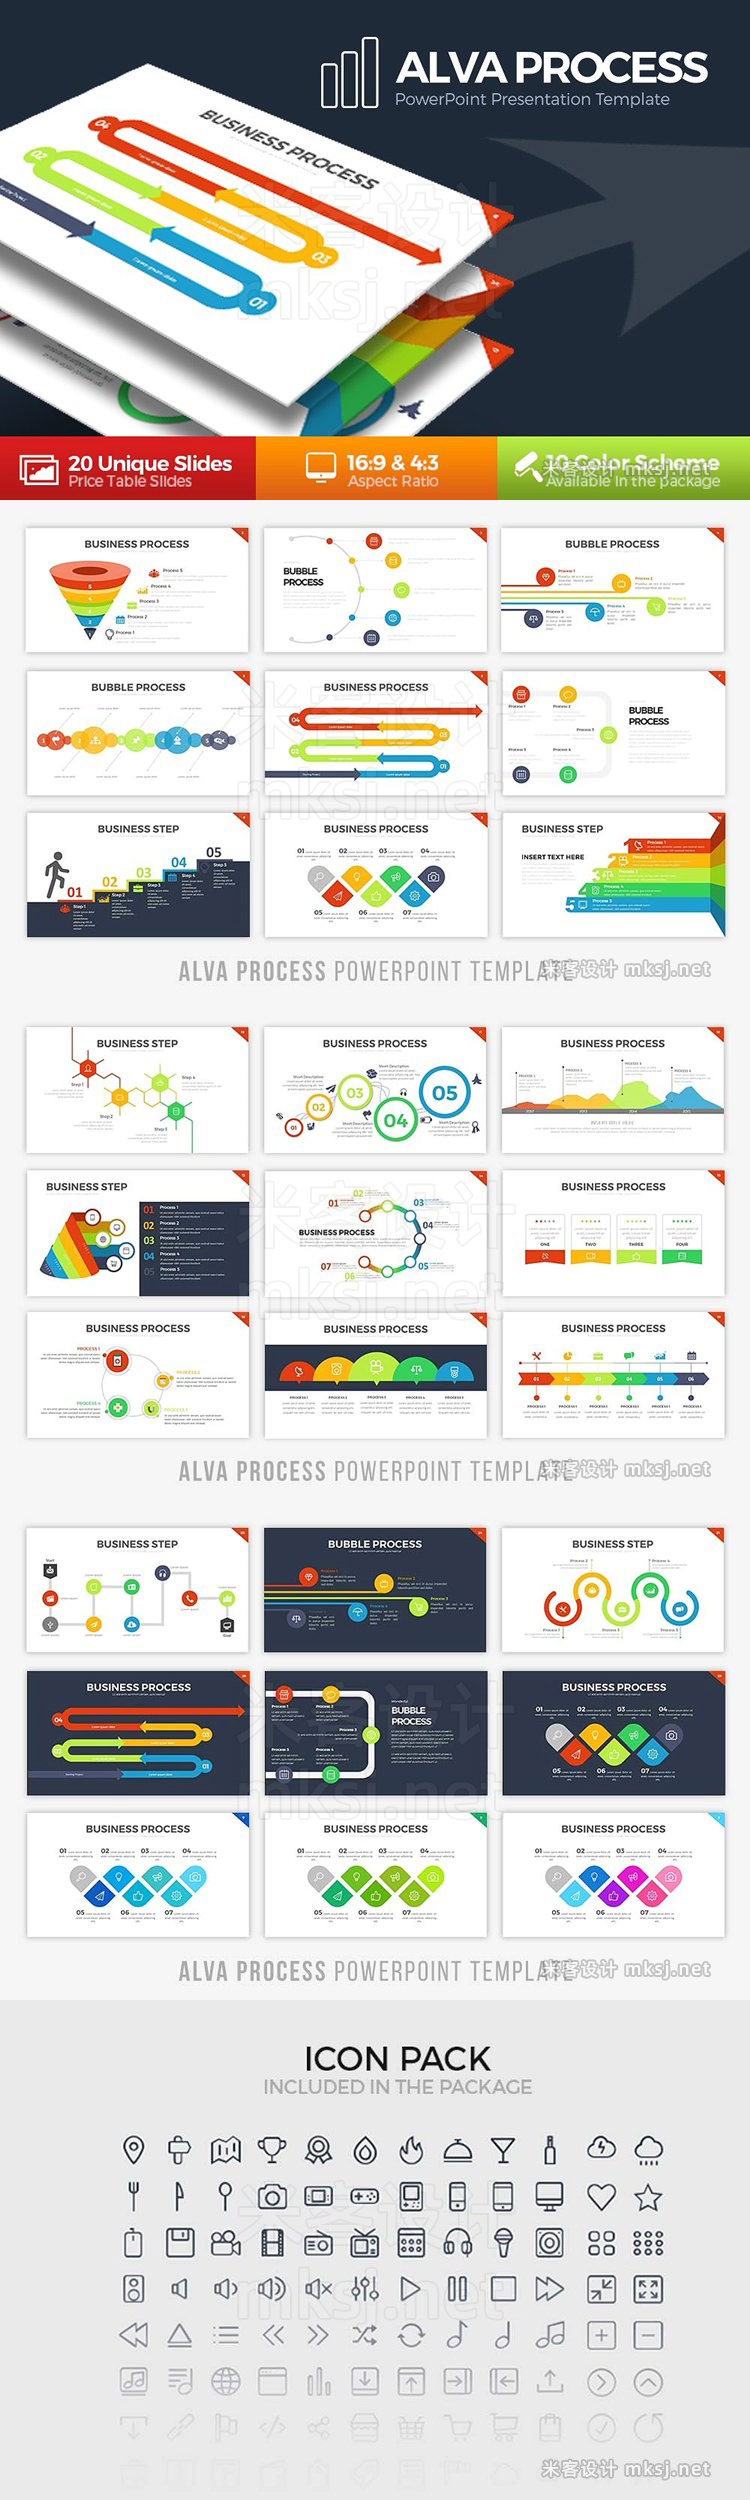 企业业务流程分析PPT模板 Alva Process Powerpoint Template